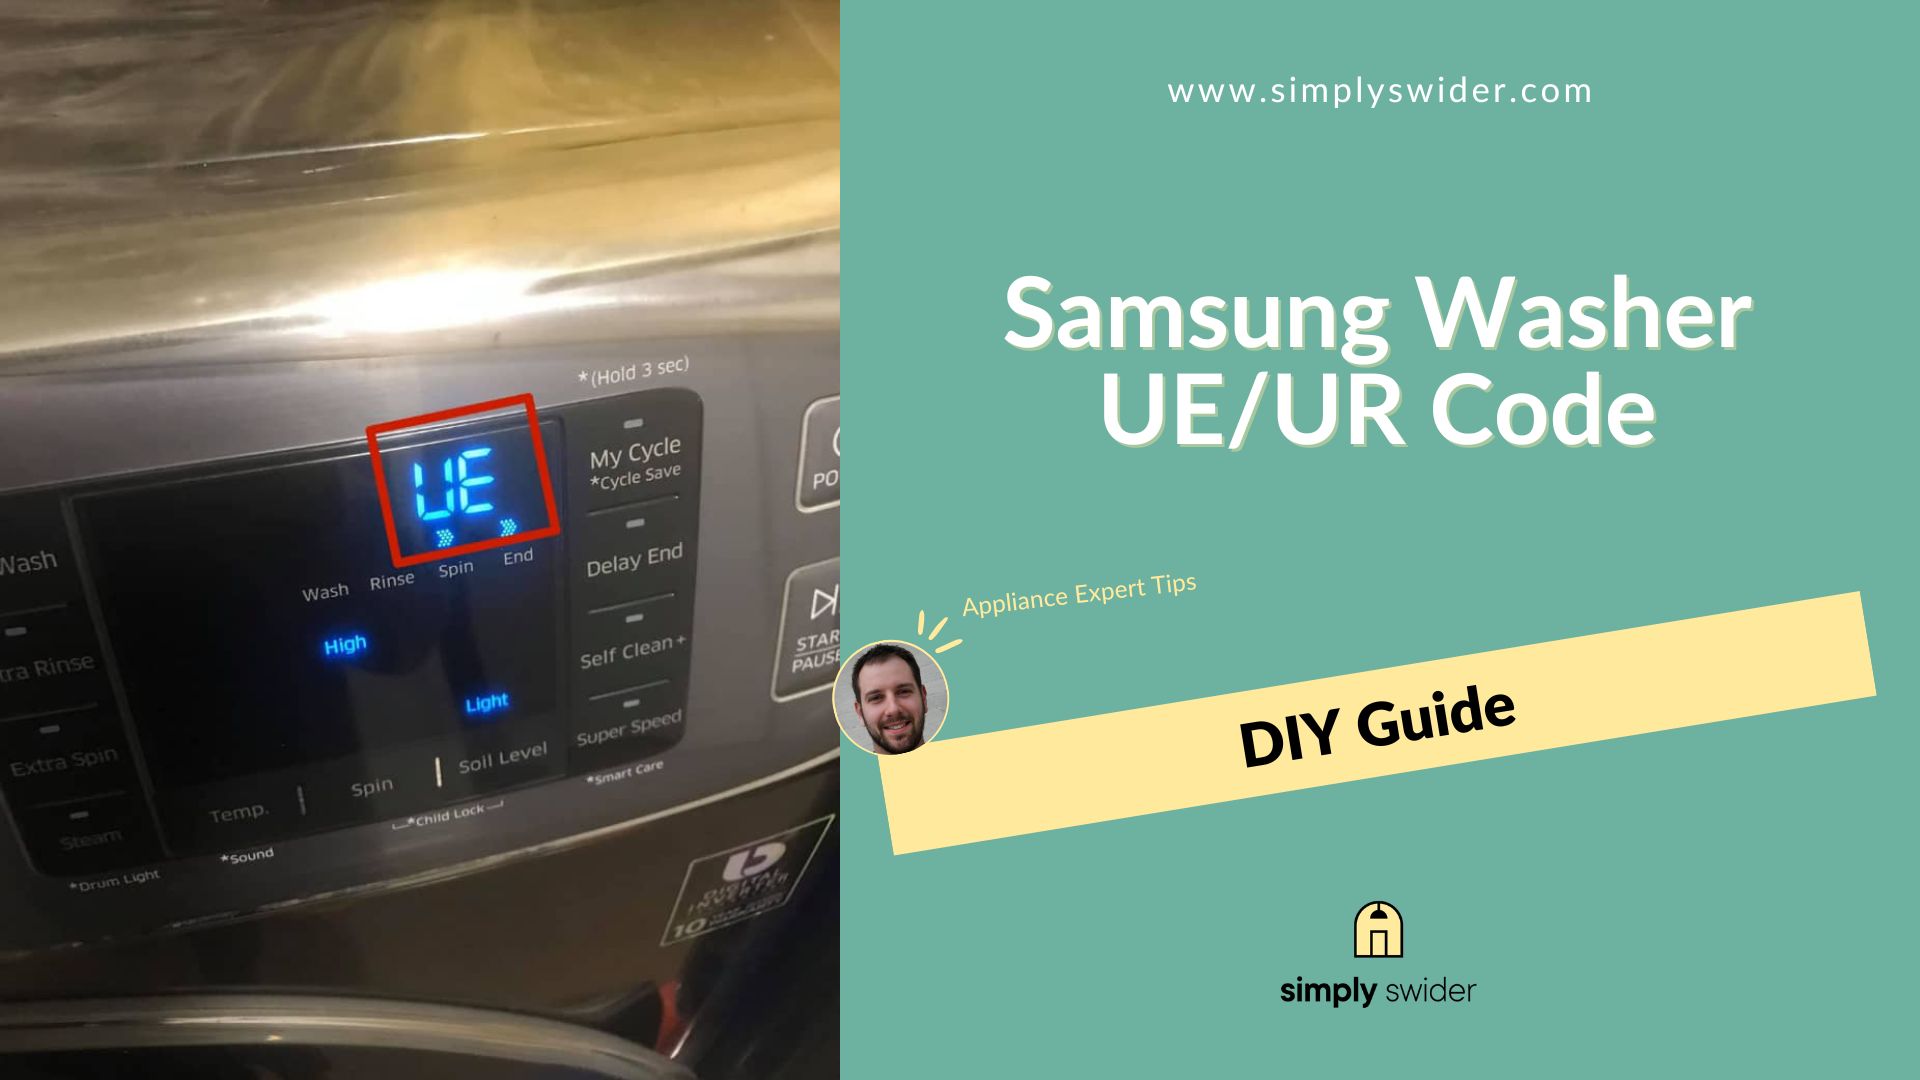 Samsung Washer UE/UR Code